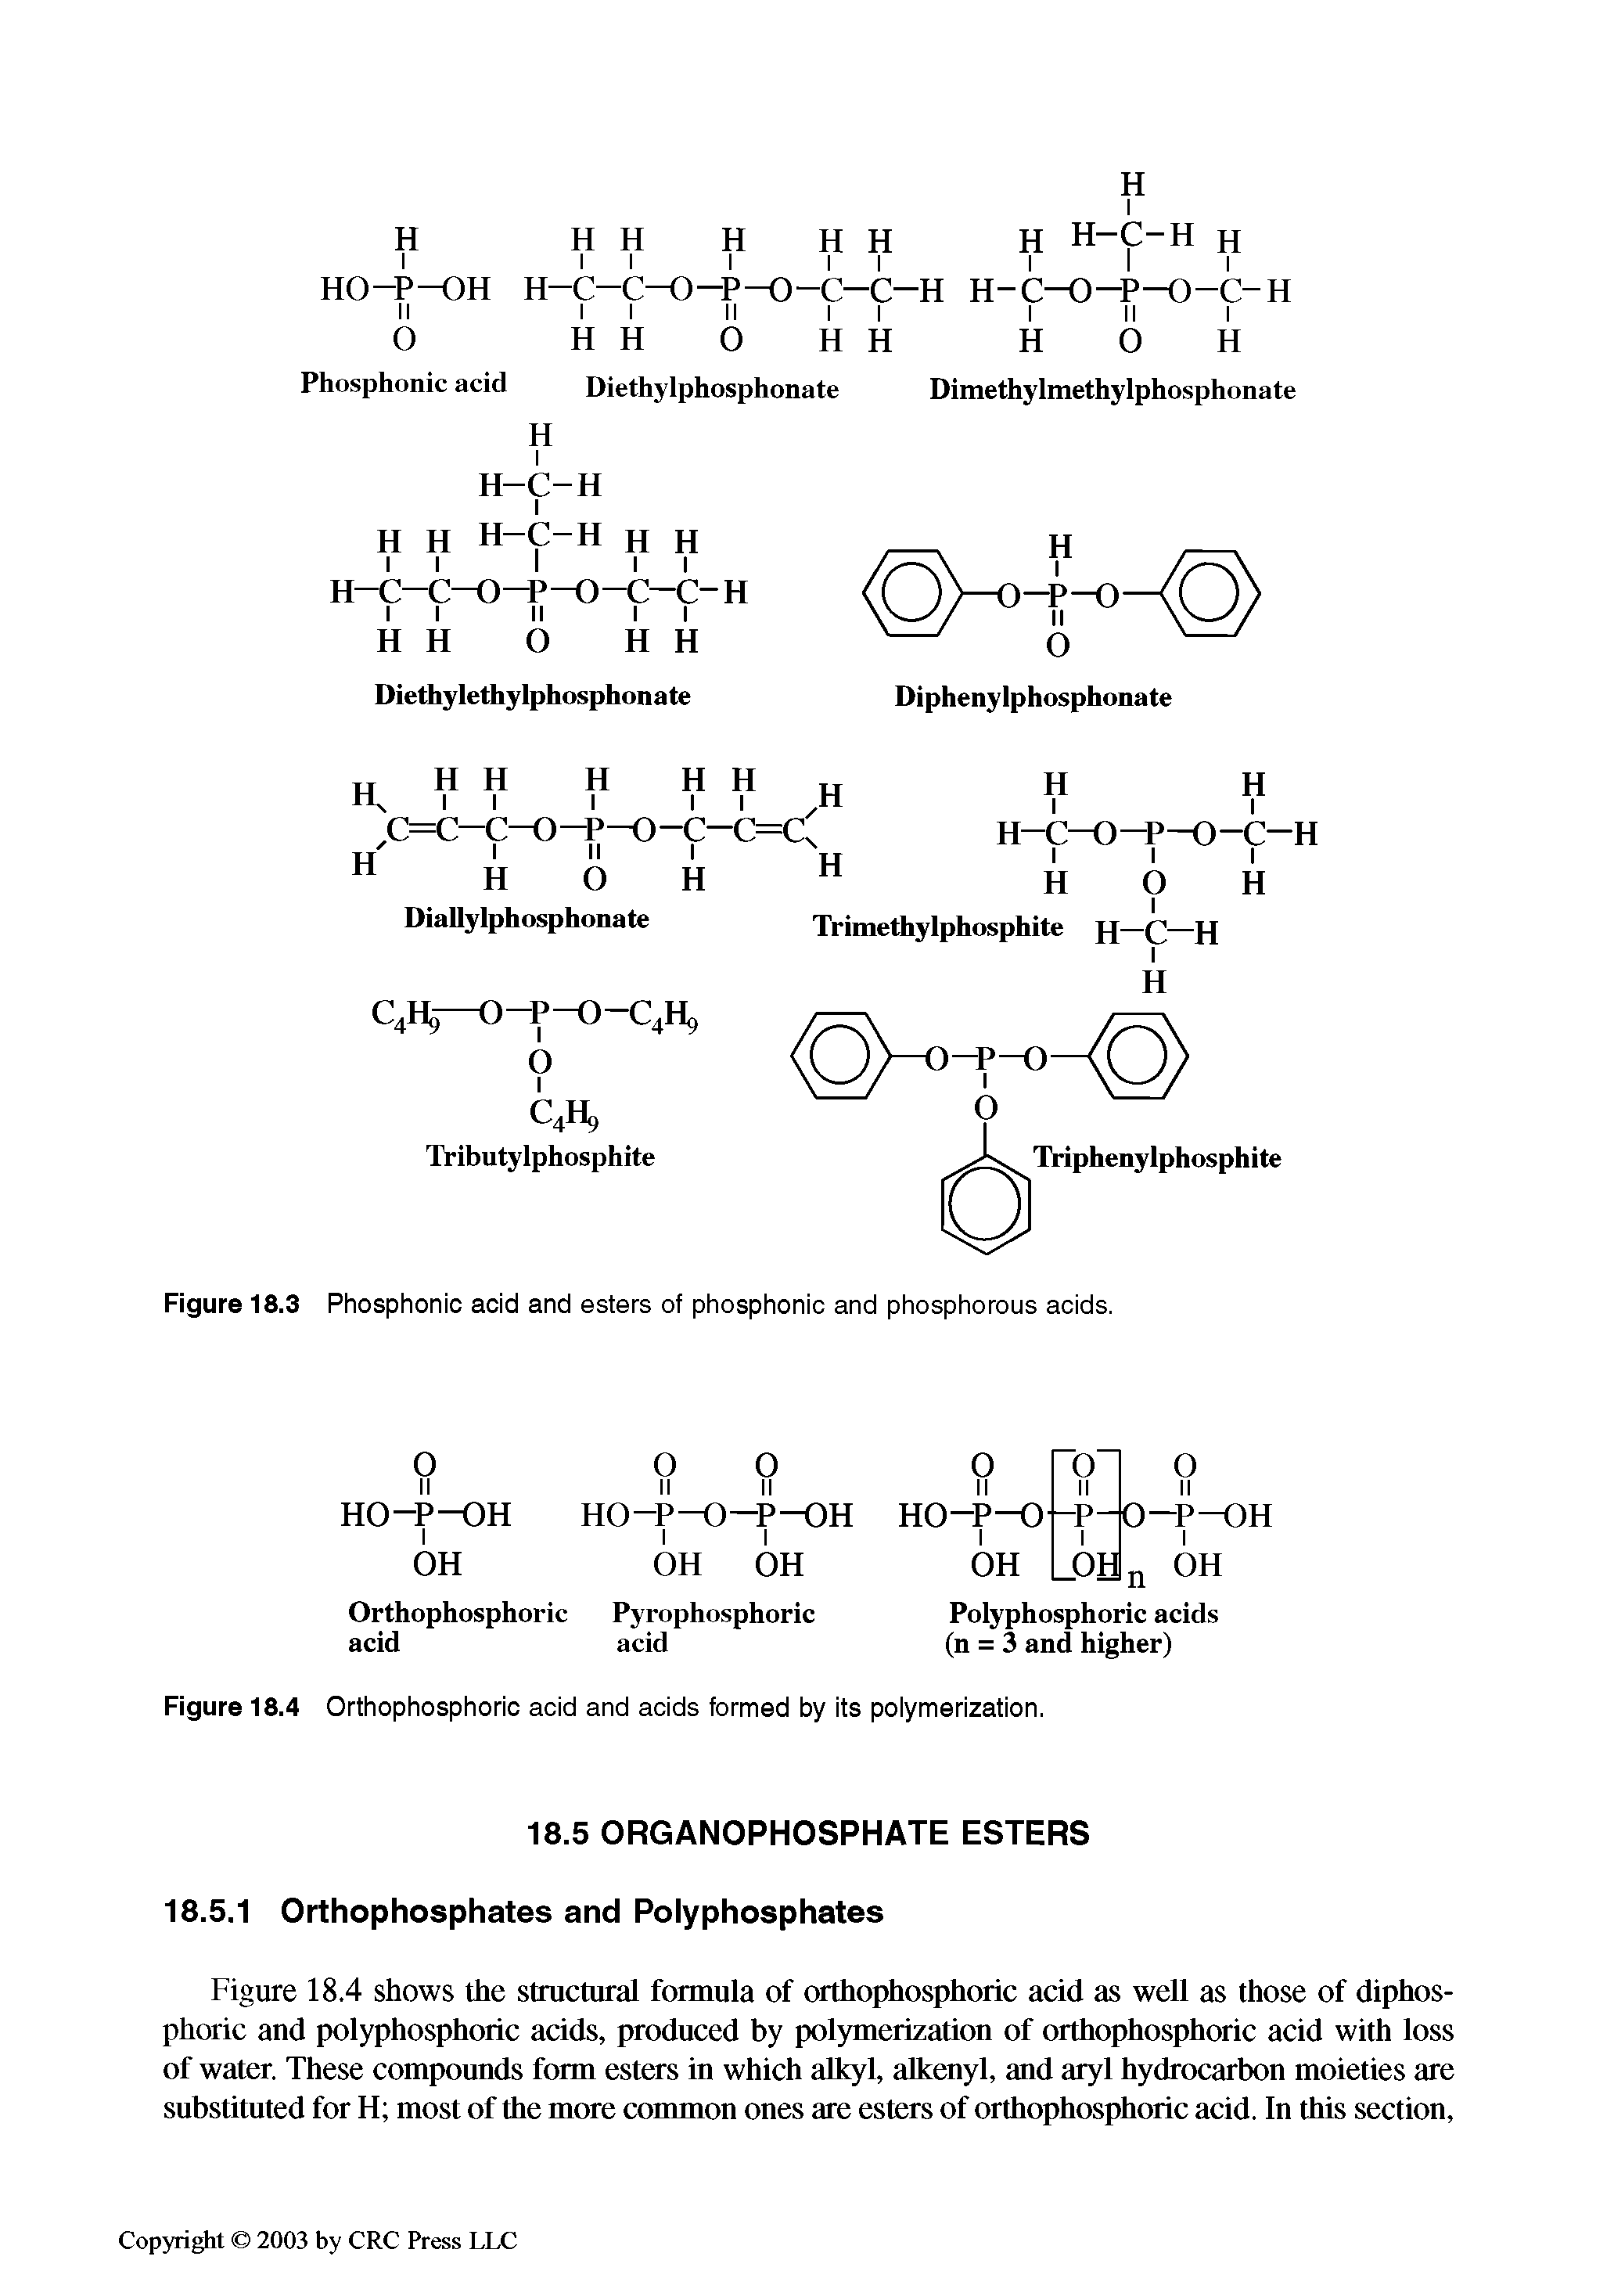 Figure 18.3 Phosphonic acid and esters of phosphonic and phosphorous acids.